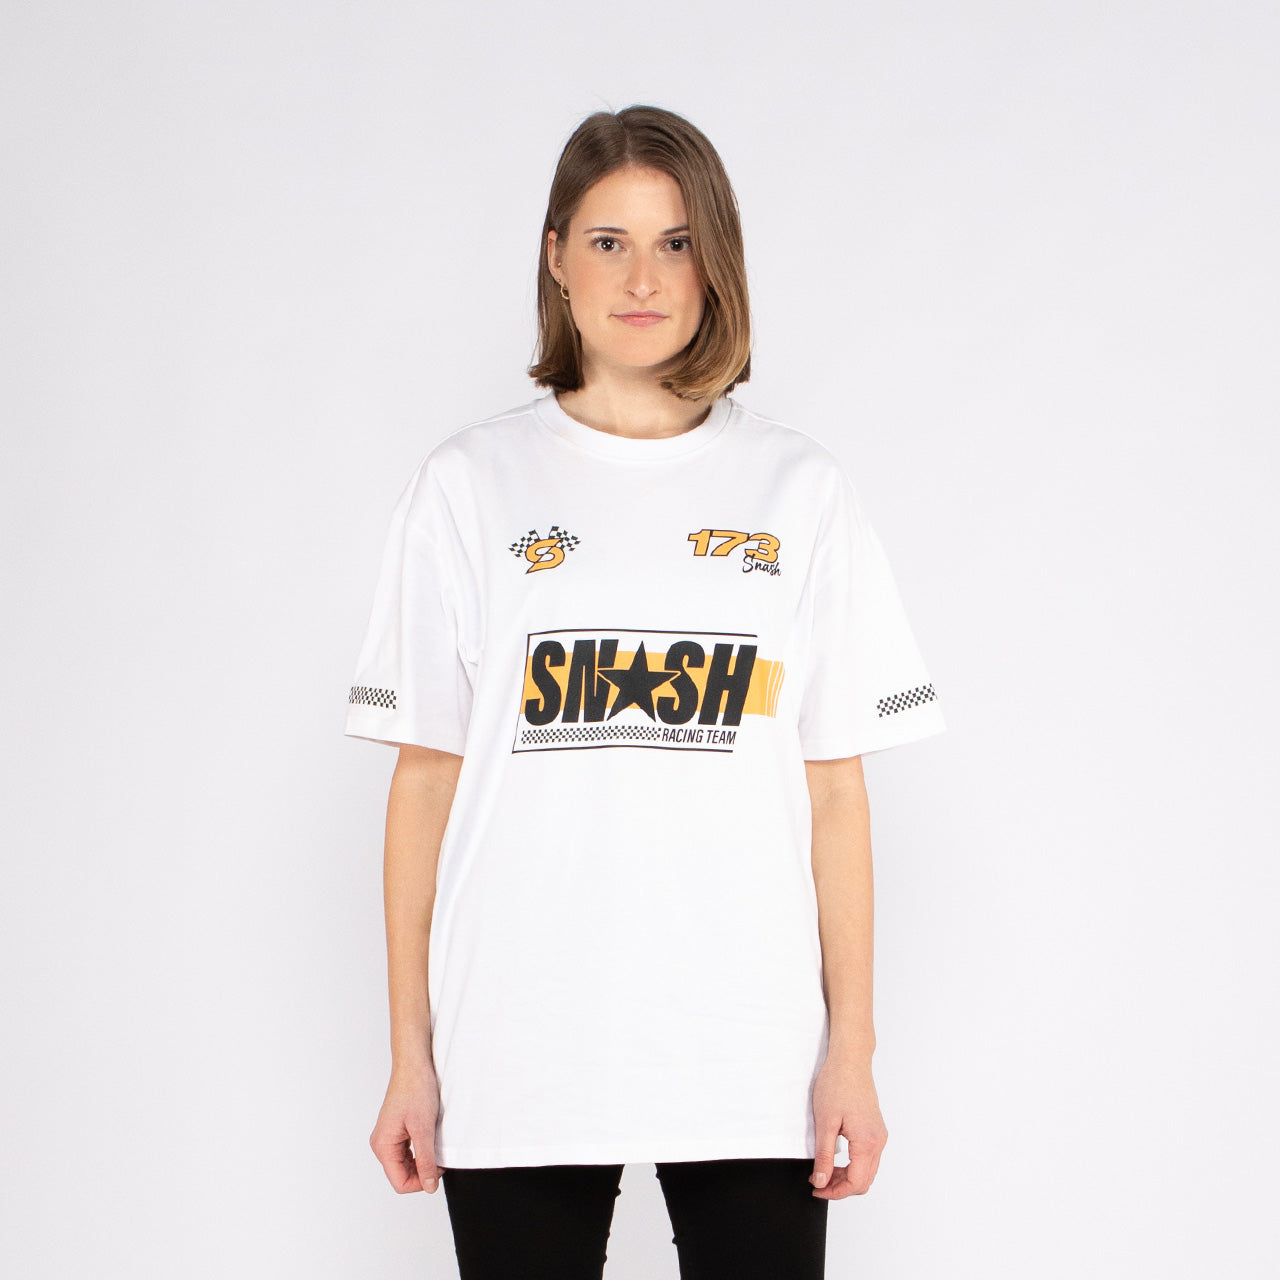 Snash - Race Team Shirt